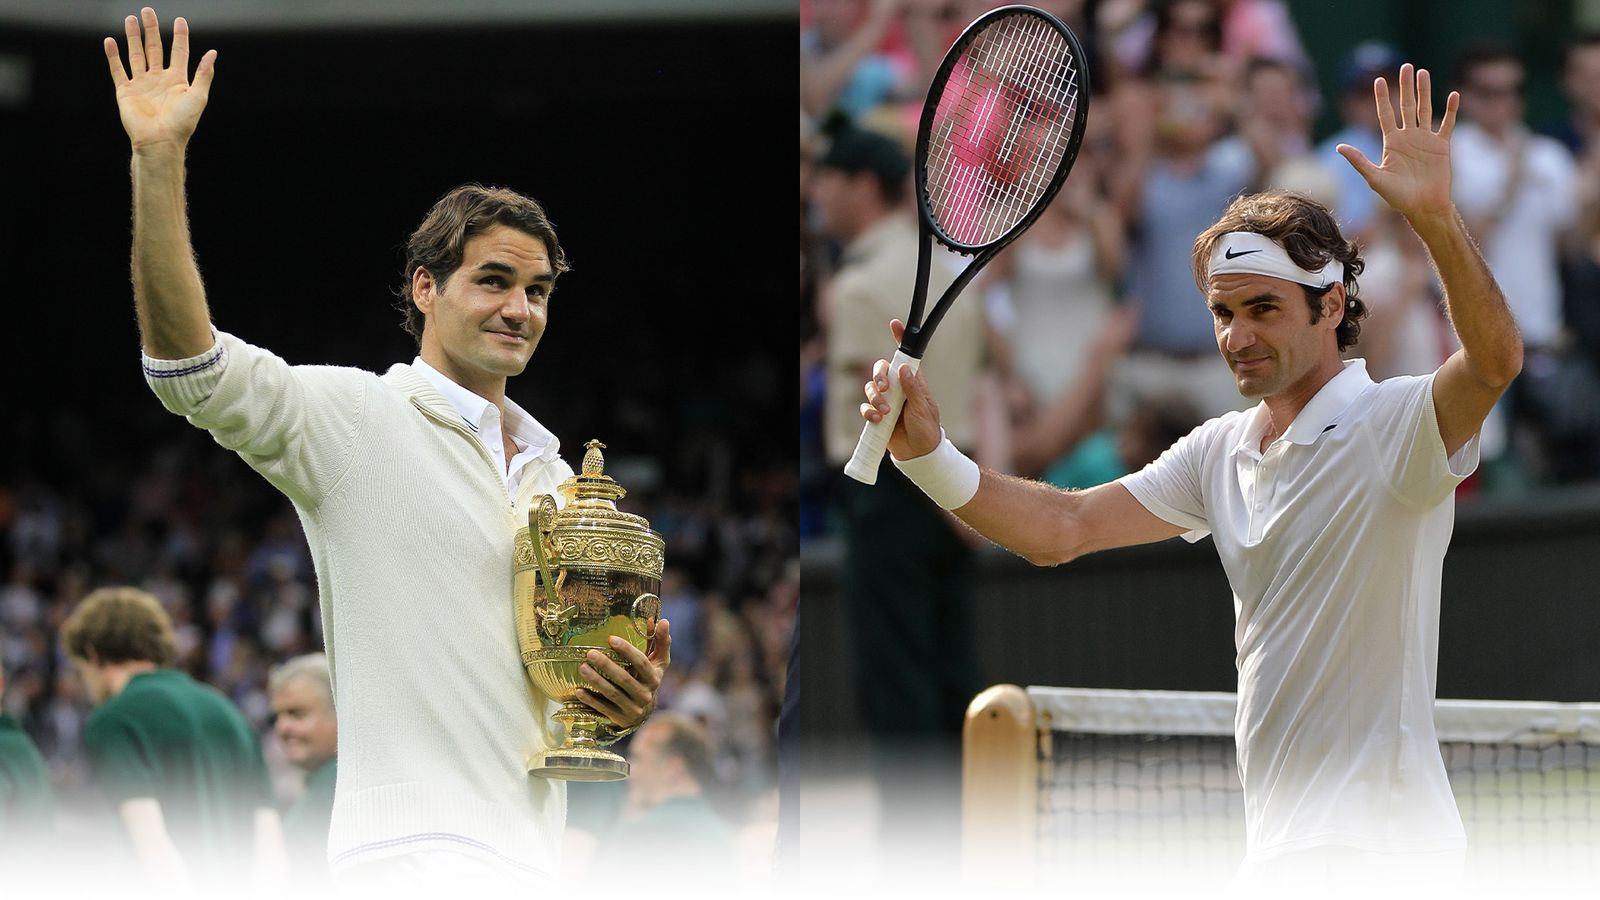 Roger Federer: "Tàu tốc hành" đi xuyên thời đại chính thức "ngừng chạy"